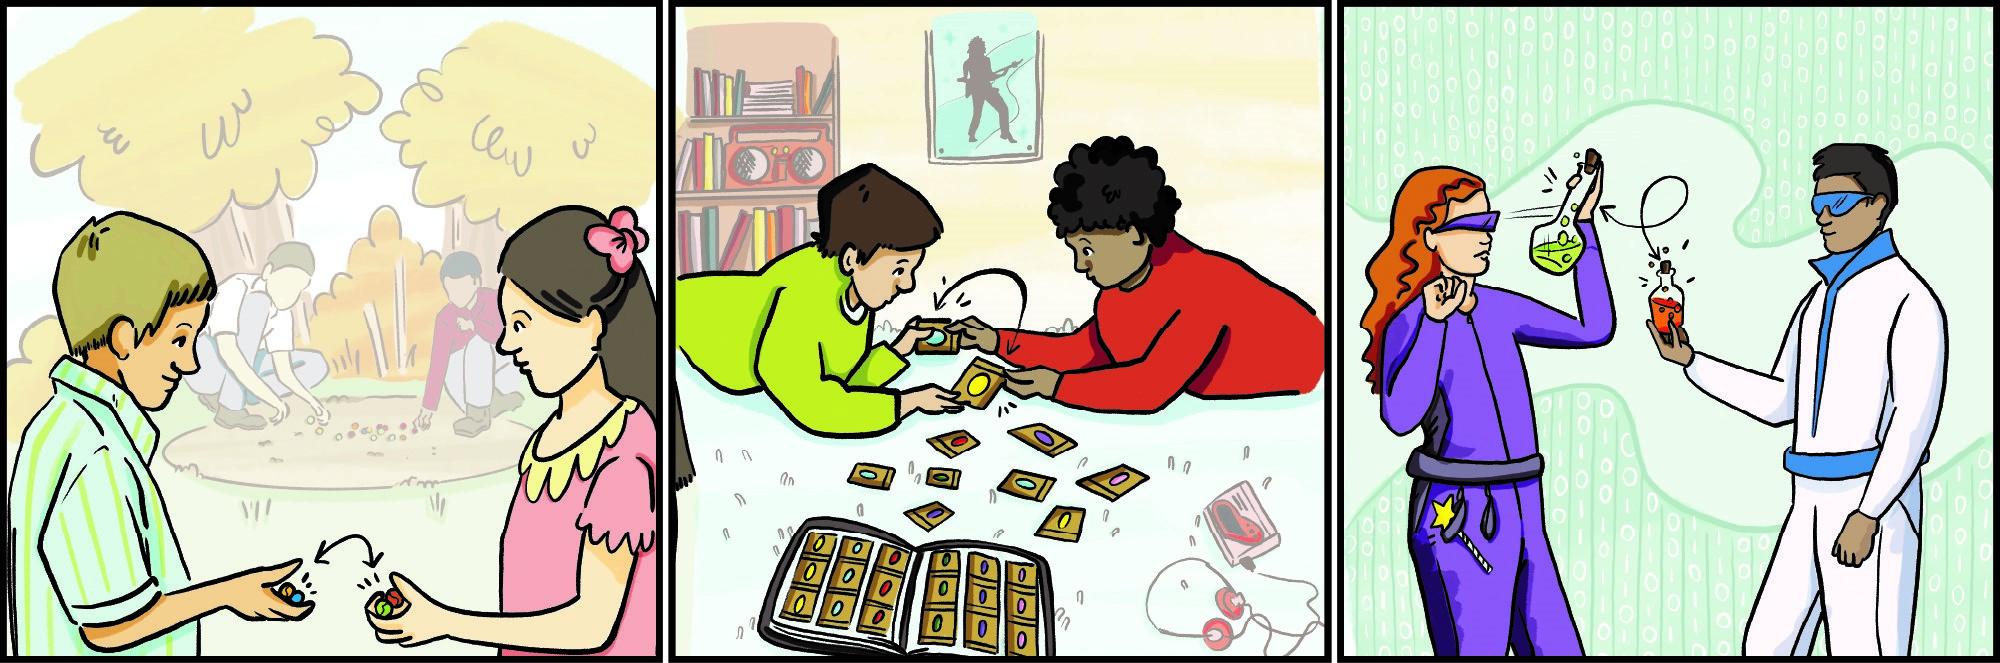 Bande dessinée en trois cases : des enfants dans un parc échangent des billes; des enfants dans une chambre échangent des cartes; des enfants échangent virtuellement des objets de valeur dans un jeu en ligne.